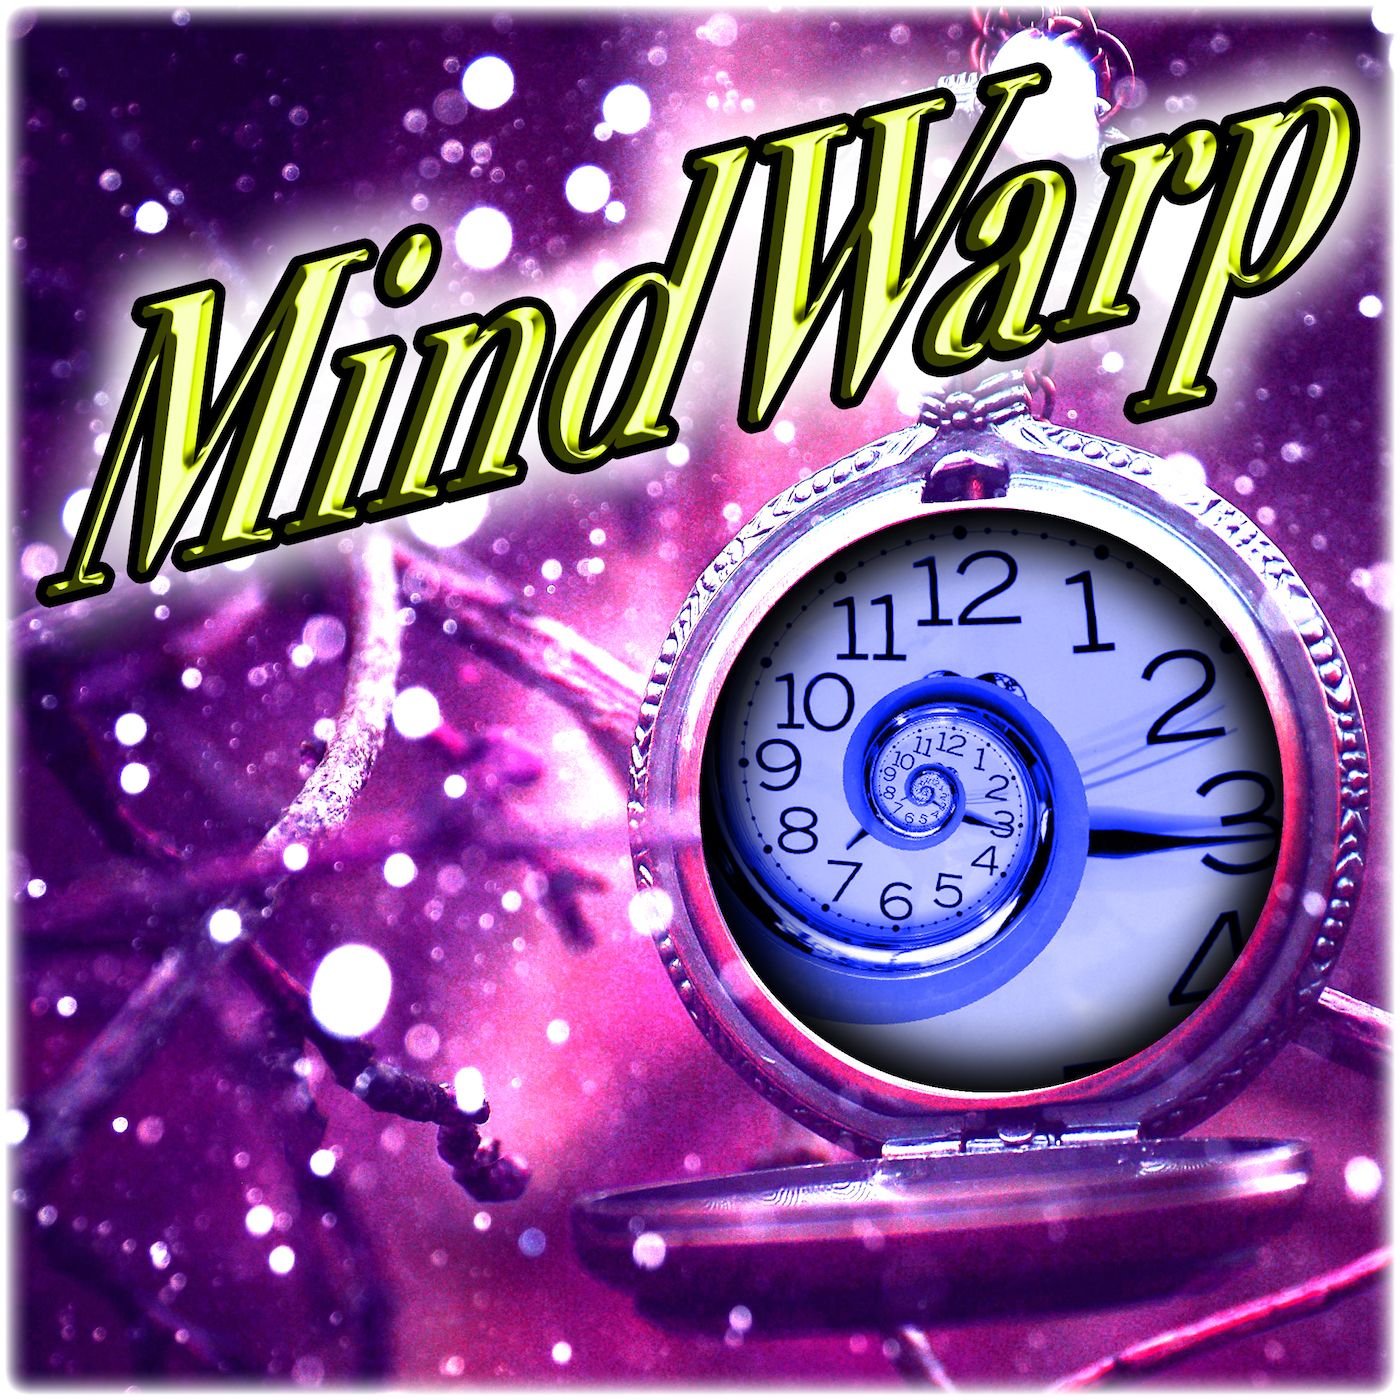 Mind Warp – An Inspirational Instant!